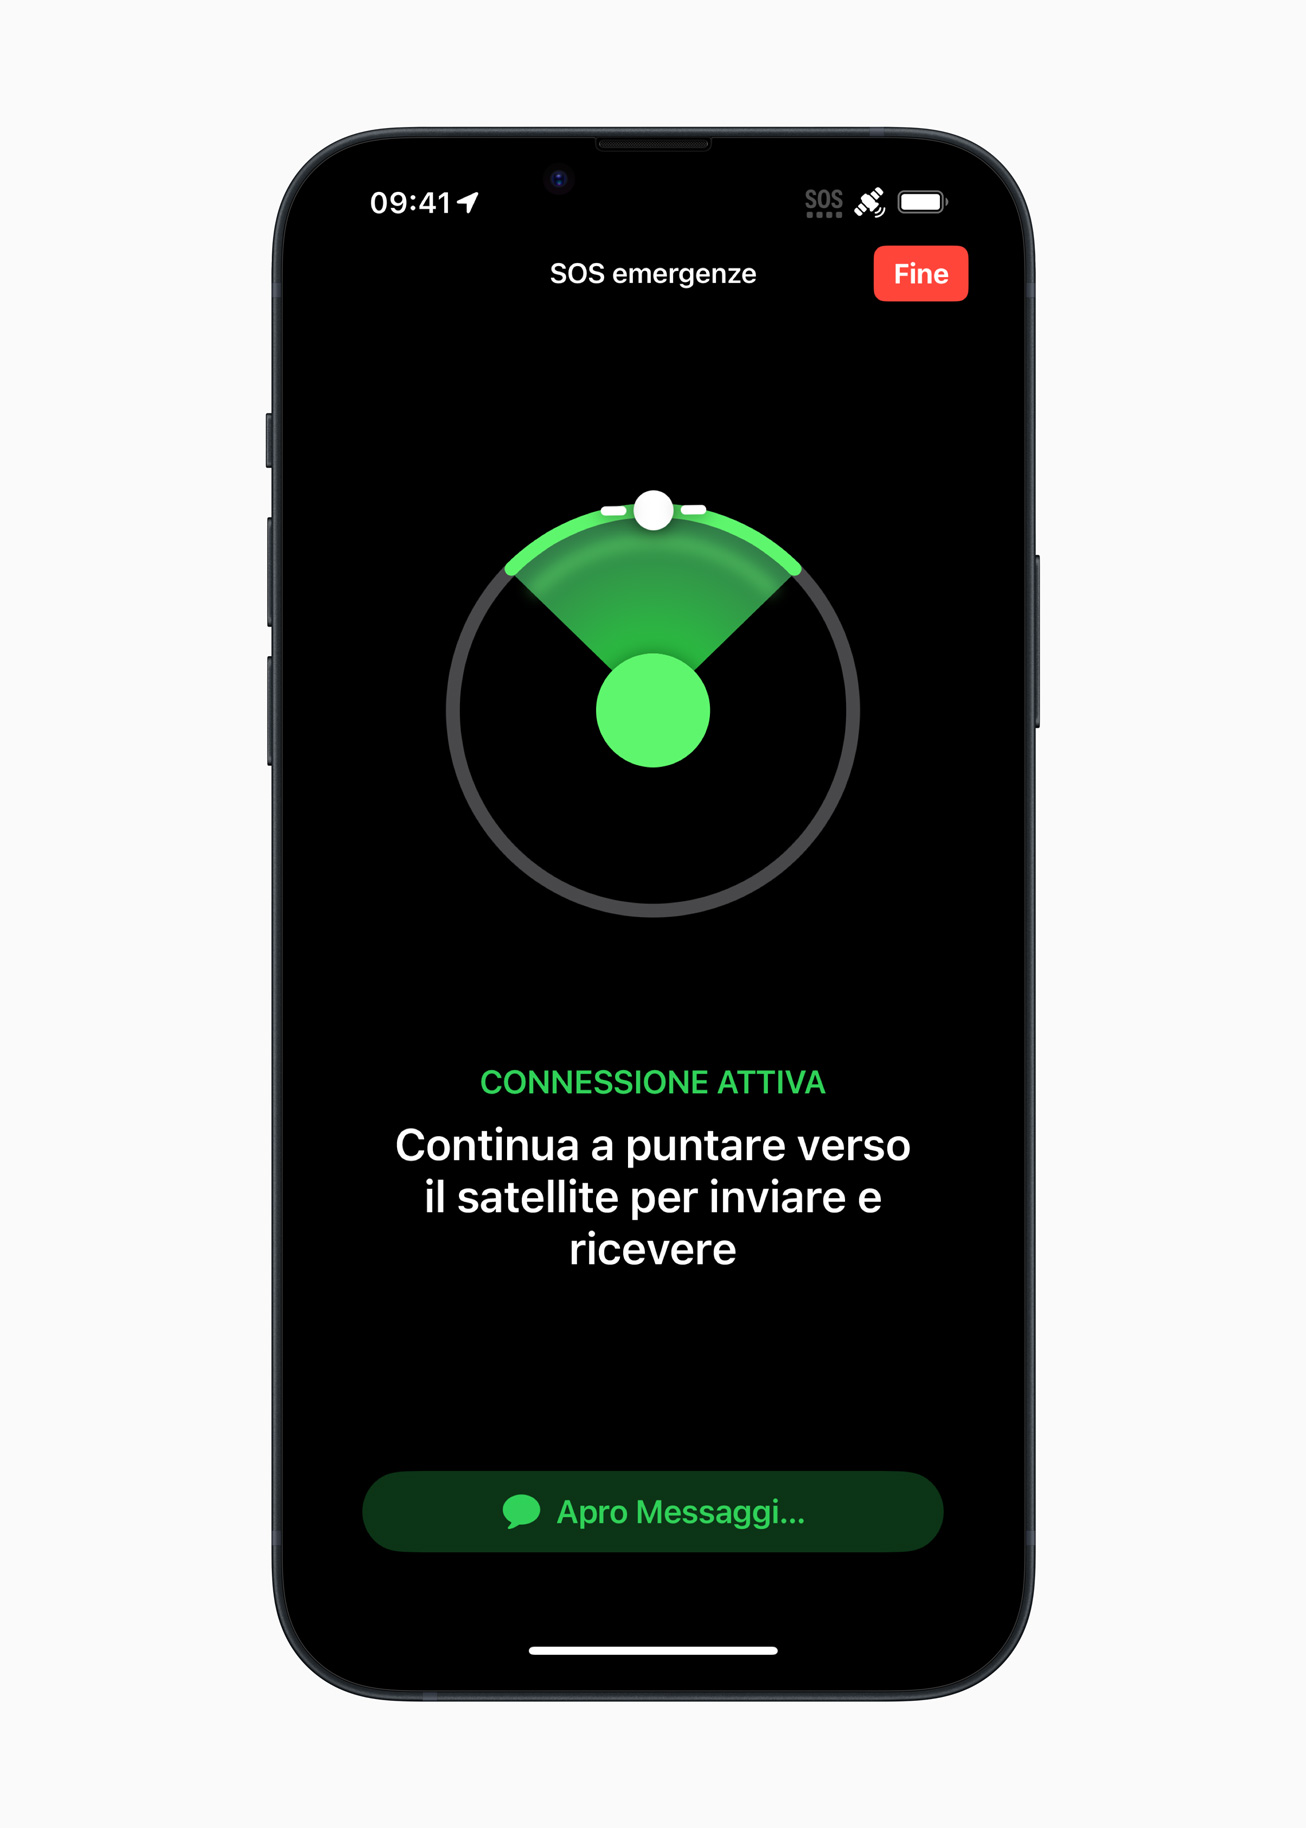 iPhone 14, SOS emergenze via satellite disponibile anche in Italia